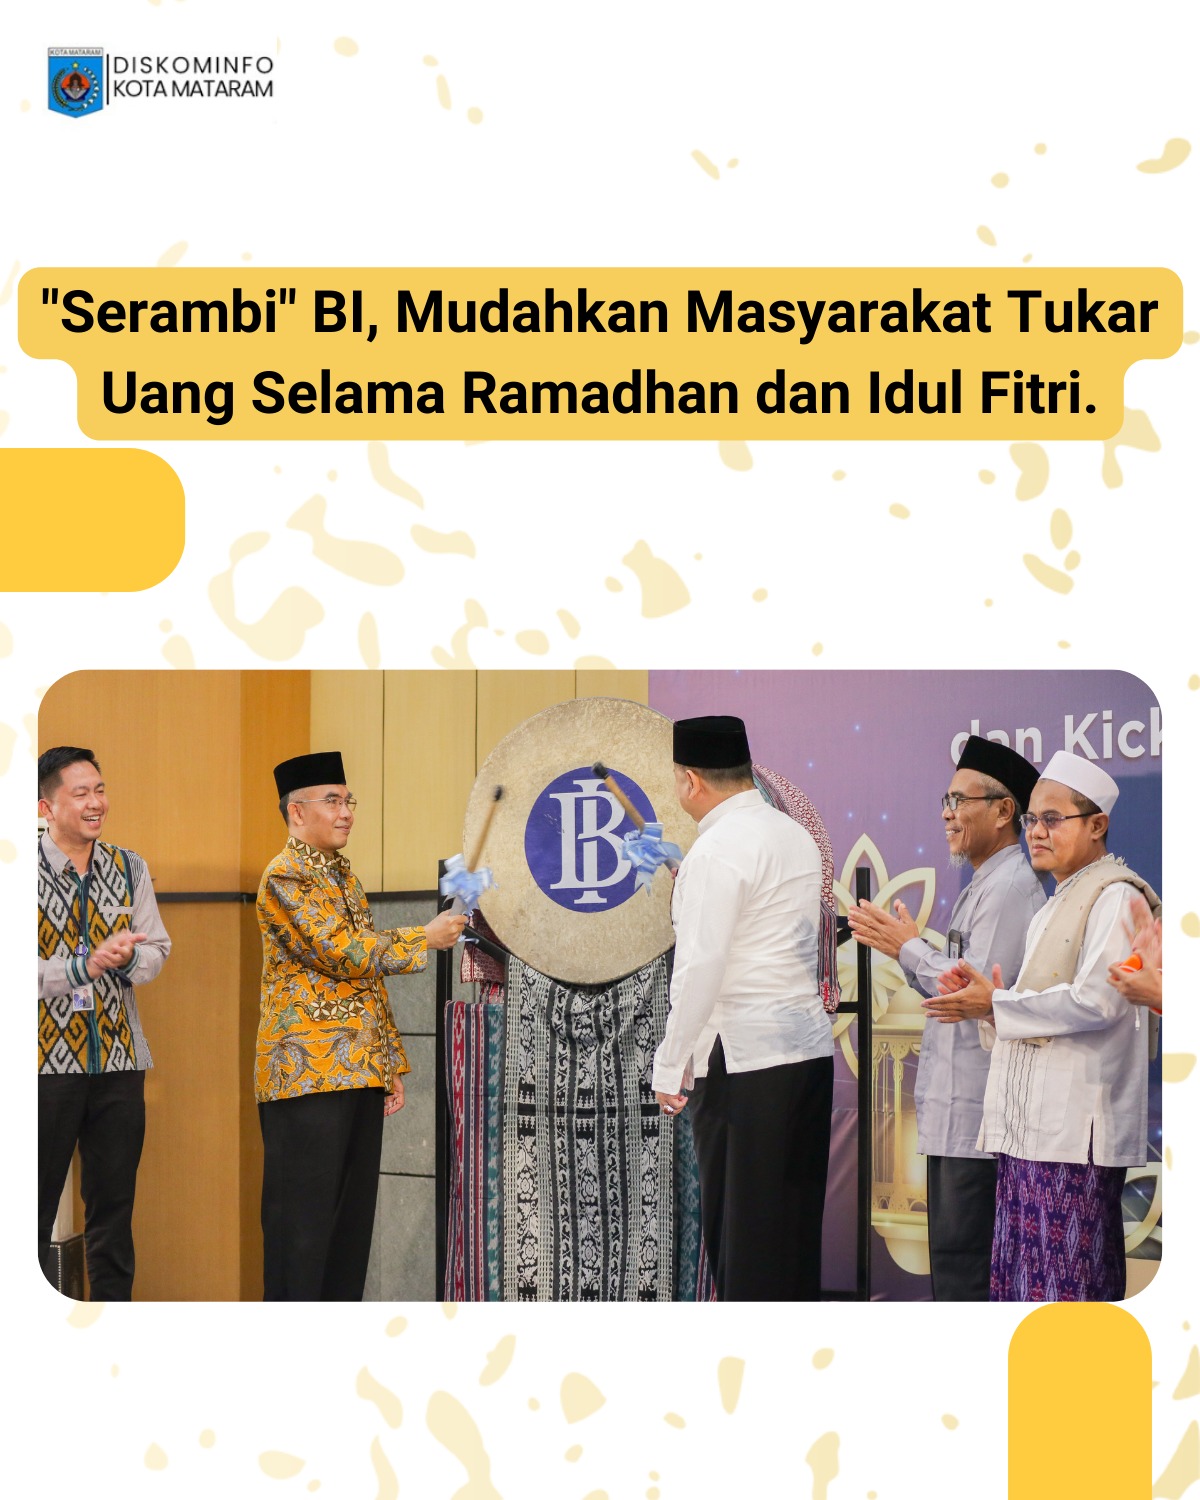 "Serambi" BI, Mudahkan Masyarakat Tukar Uang Selama Ramadhan dan Idul Fitri.